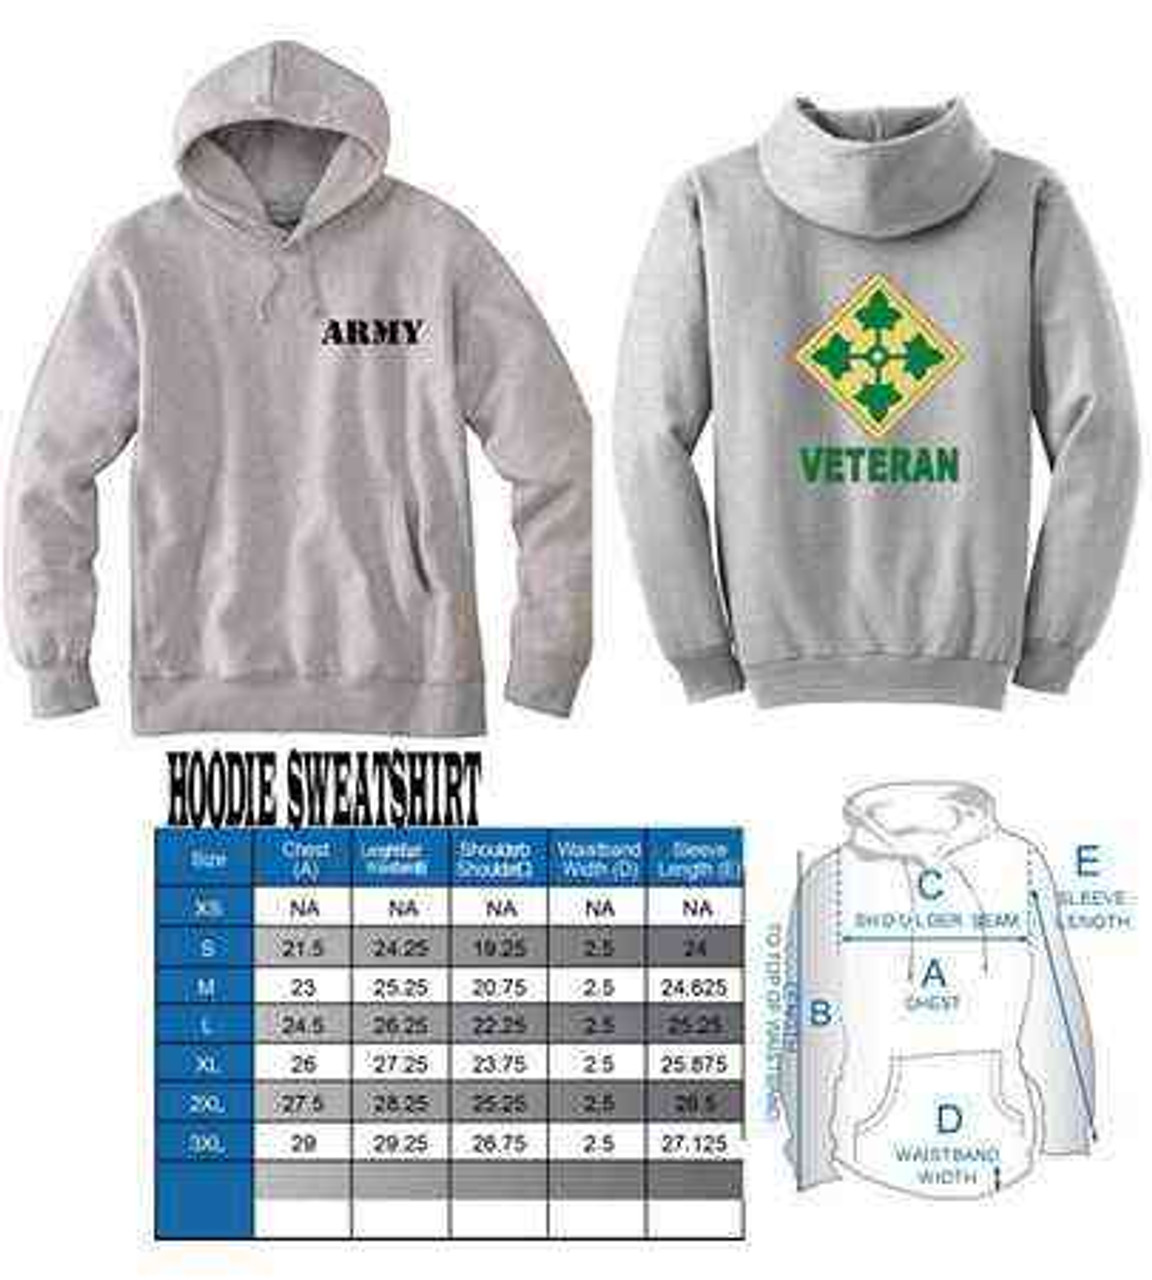 army 4th infantry division veteran hoodie sweatshirt